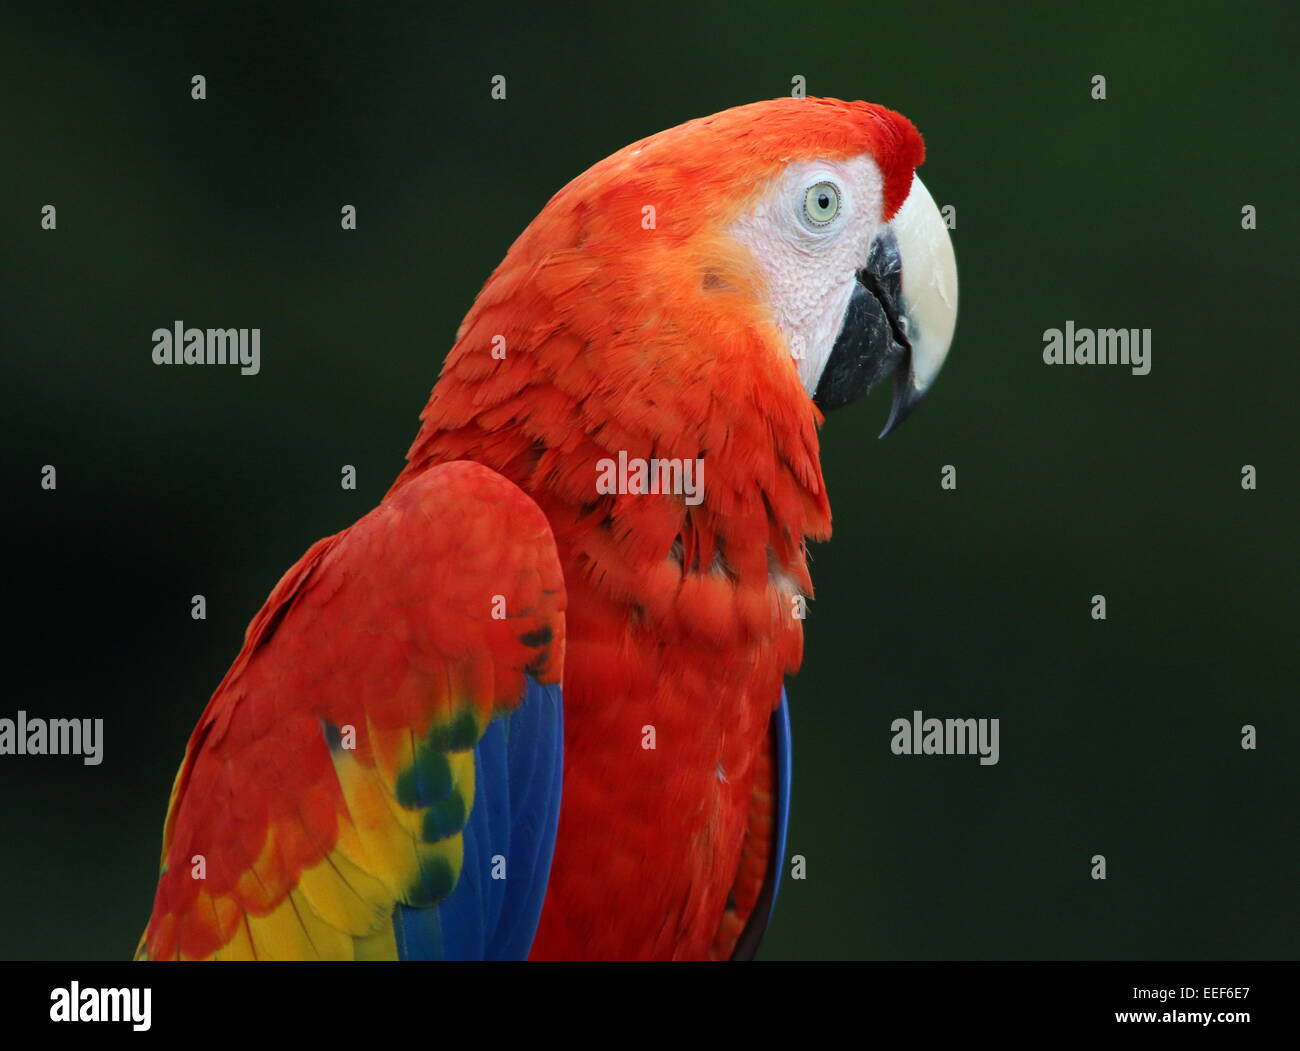 South American scharlachrote Aras (Ara Macao) Porträt im Profil vor einem grünen Hintergrund Stockfoto